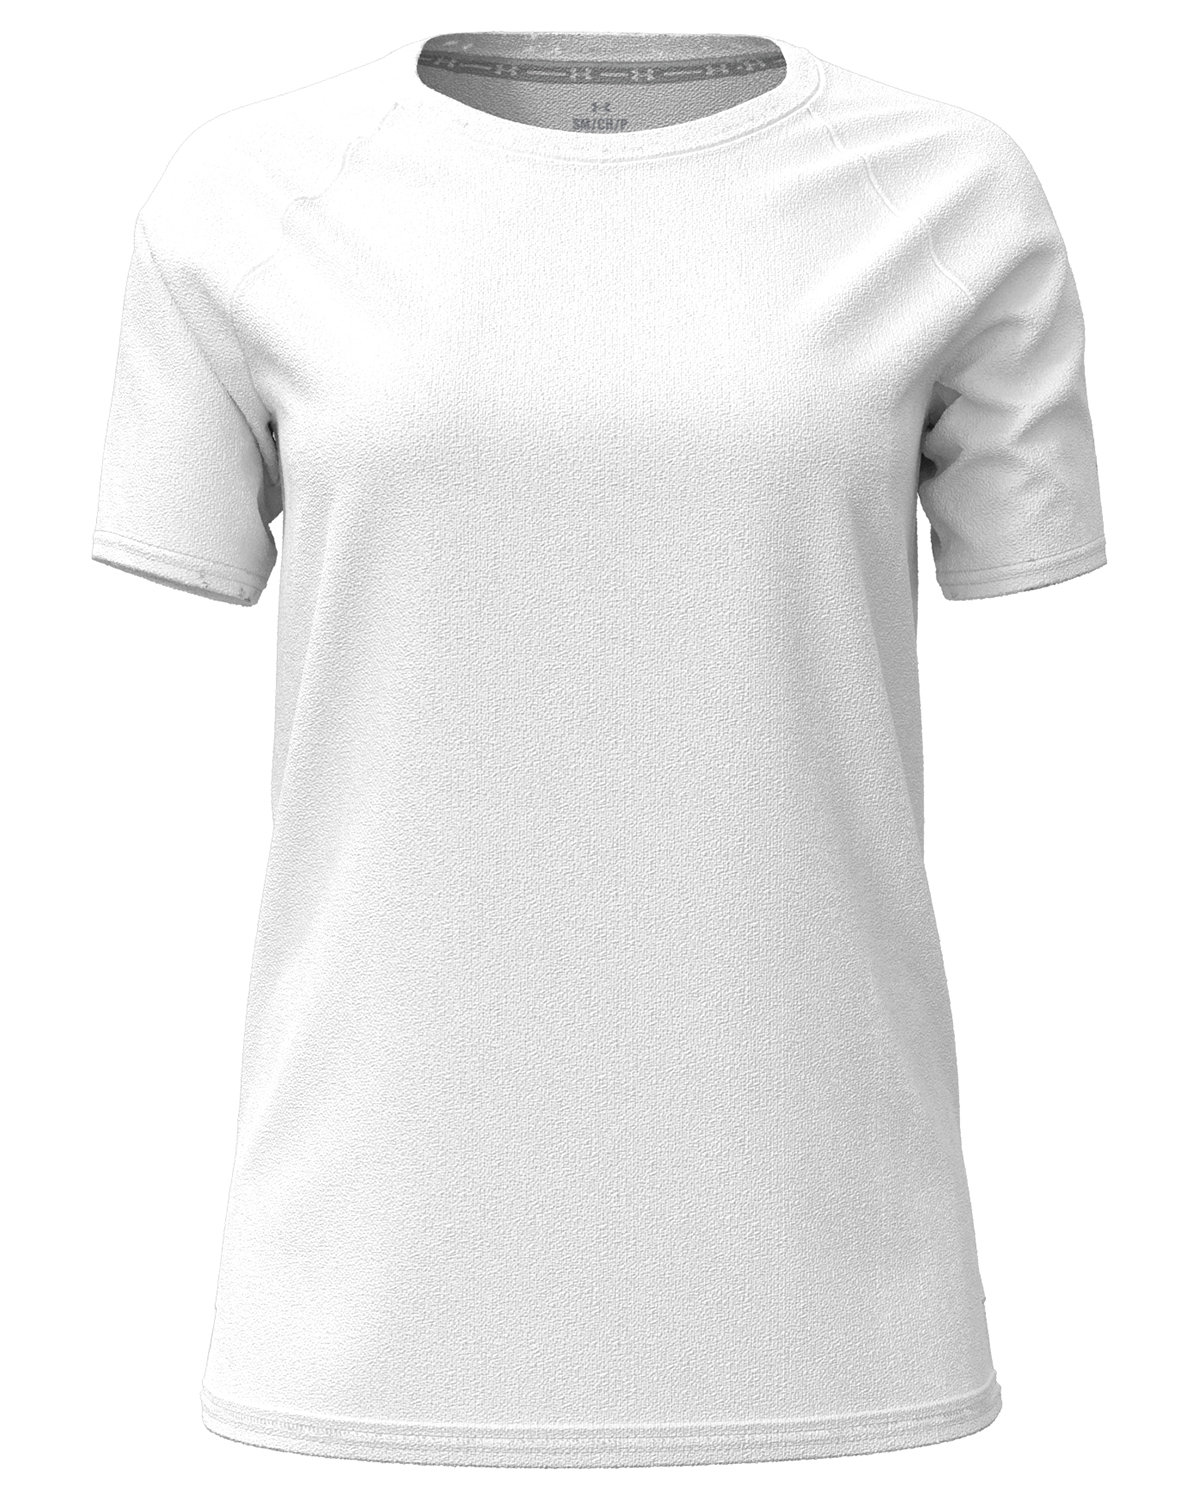 Under Armour 1376903 - Ladies' Athletics T-Shirt